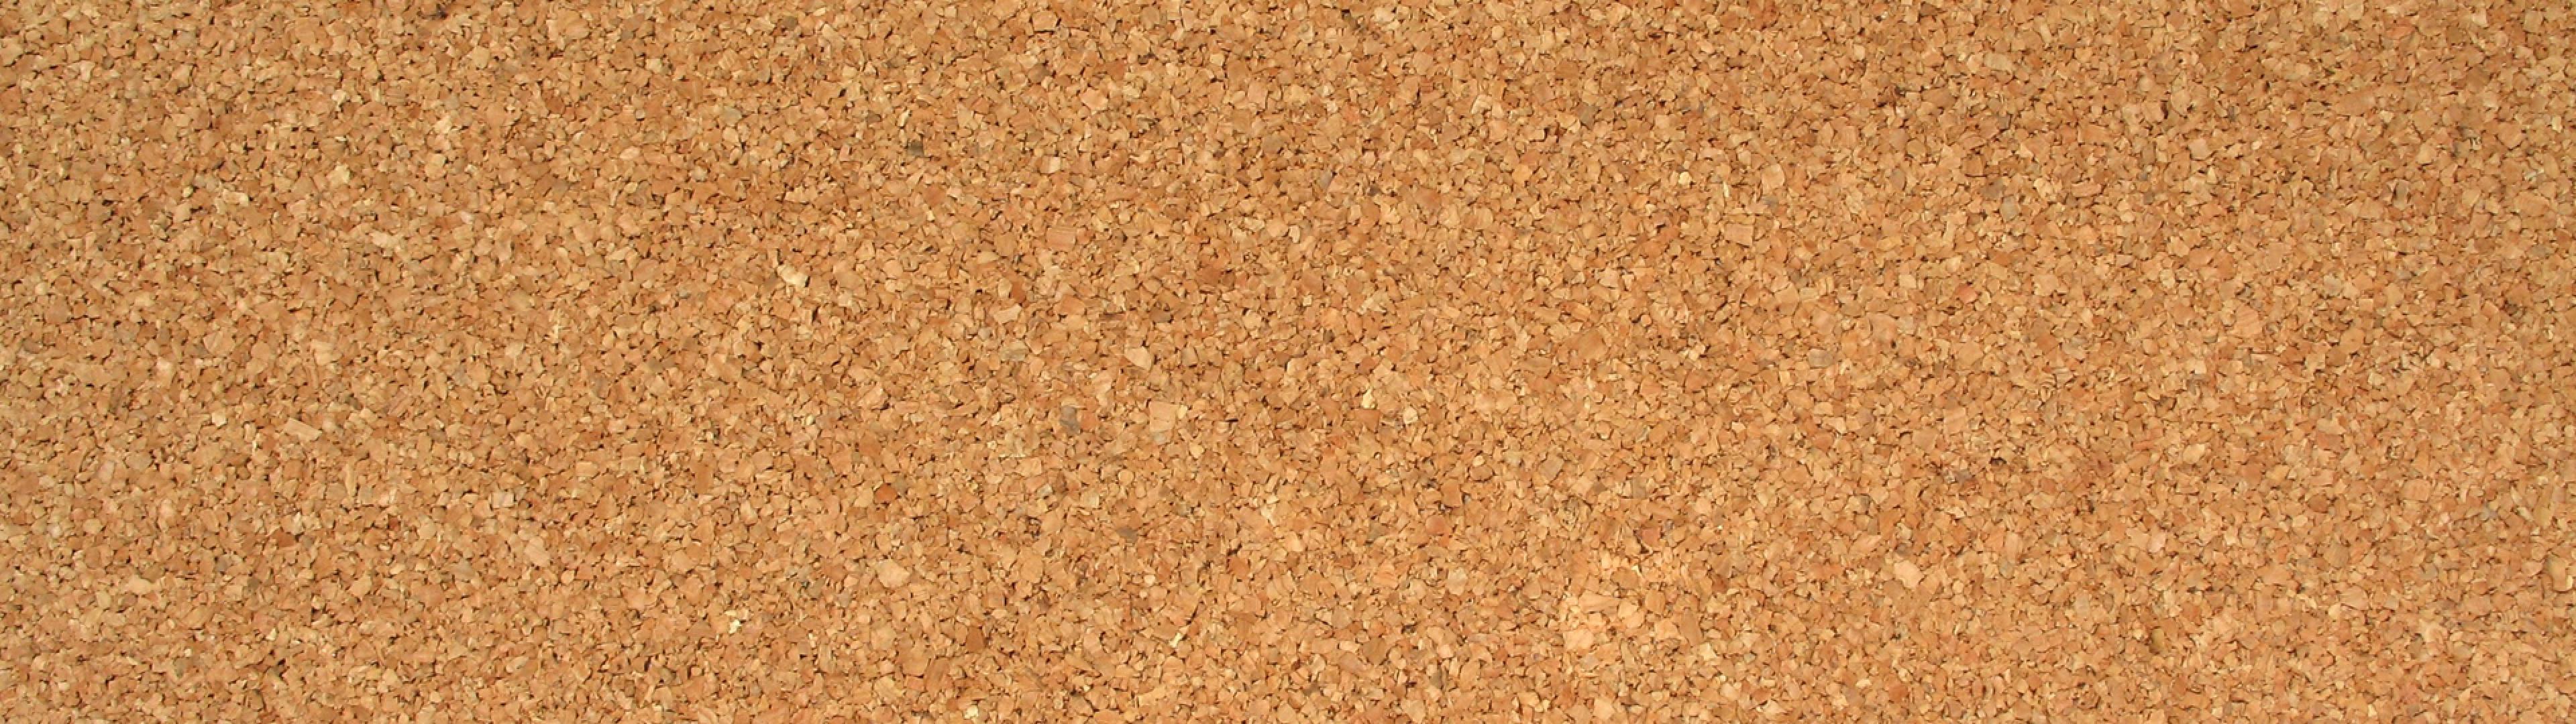 コルクボード壁紙,コルク,褐色,ベージュ,砂,床